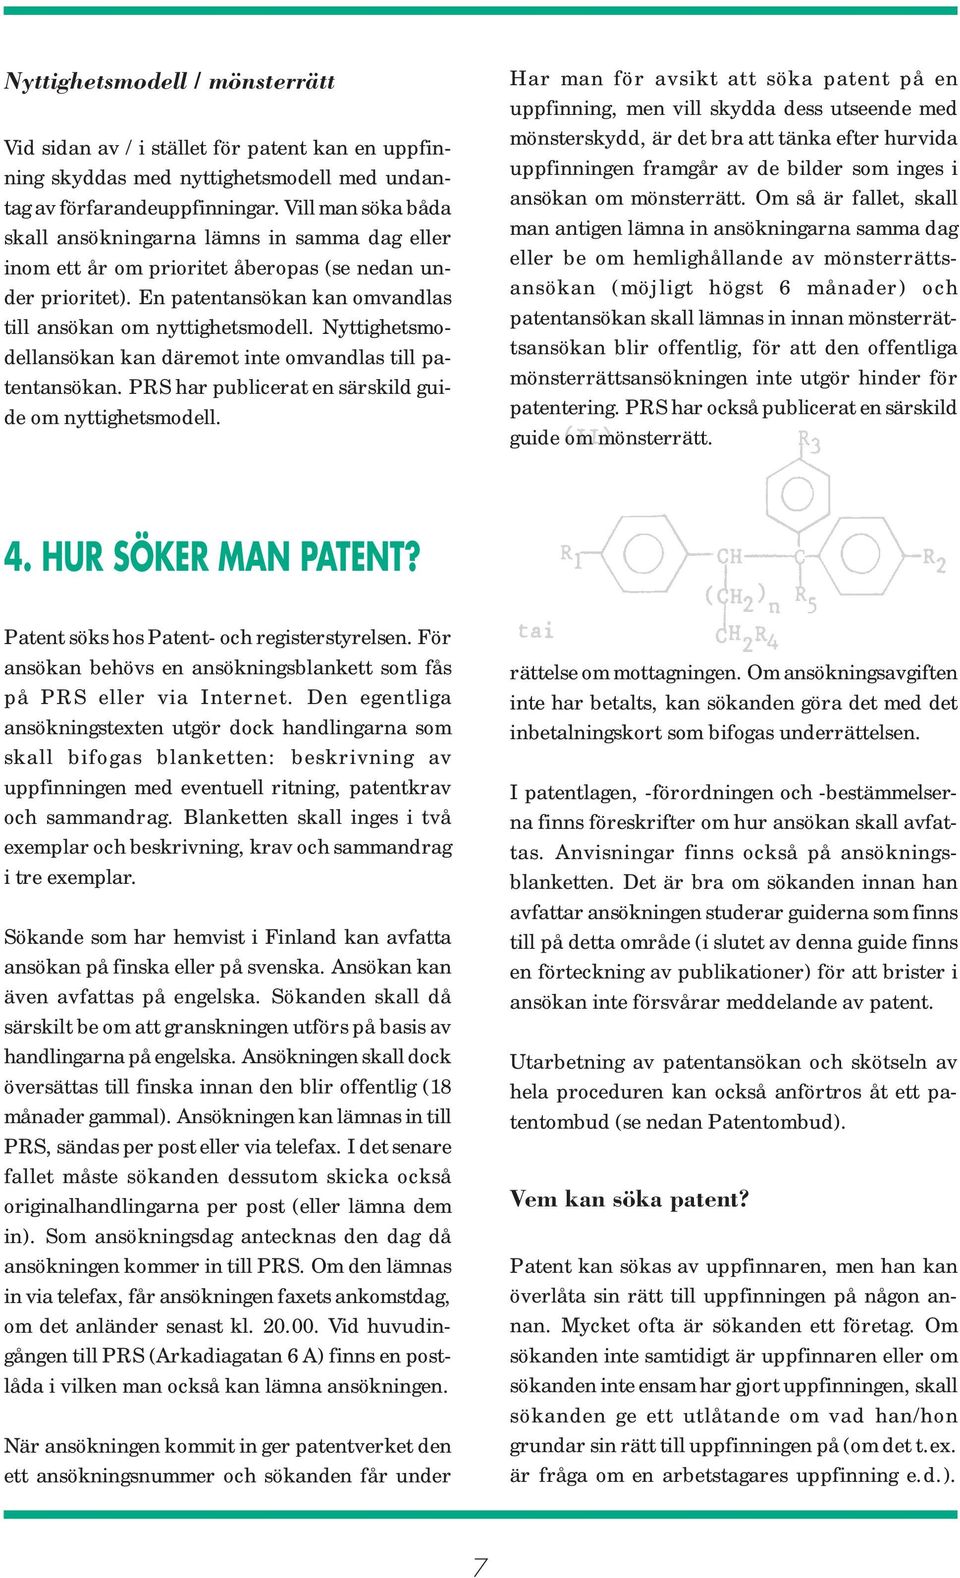 Nyttighetsmodellansökan kan däremot inte omvandlas till patentansökan. PRS har publicerat en särskild guide om nyttighetsmodell.